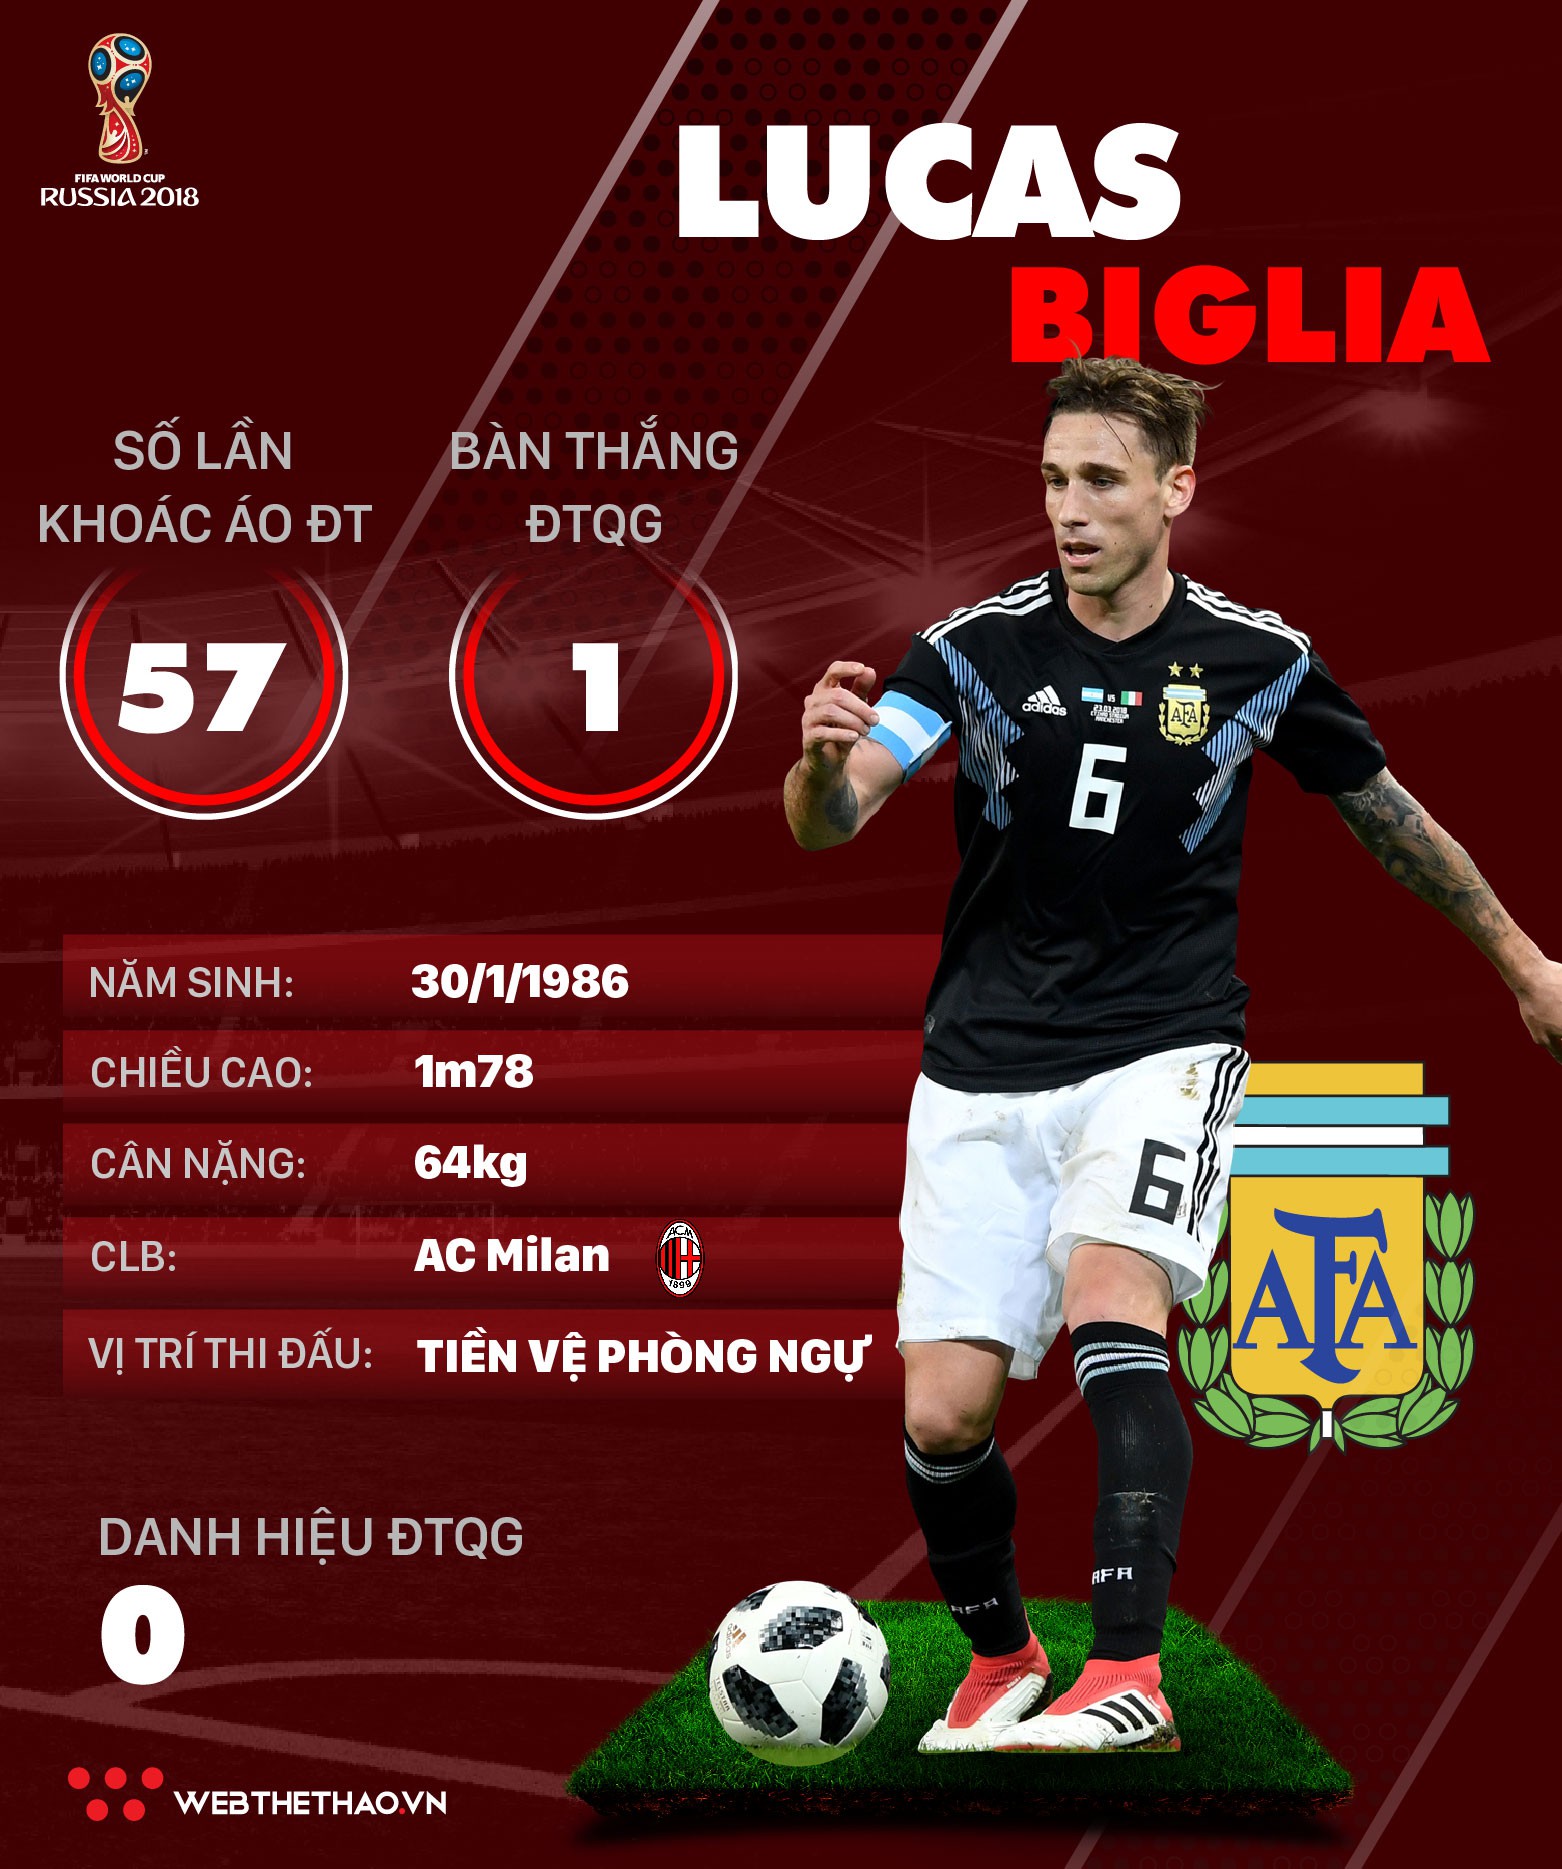 Thông tin cầu thủ Lucas Biglia của ĐT Argentina dự World Cup 2018